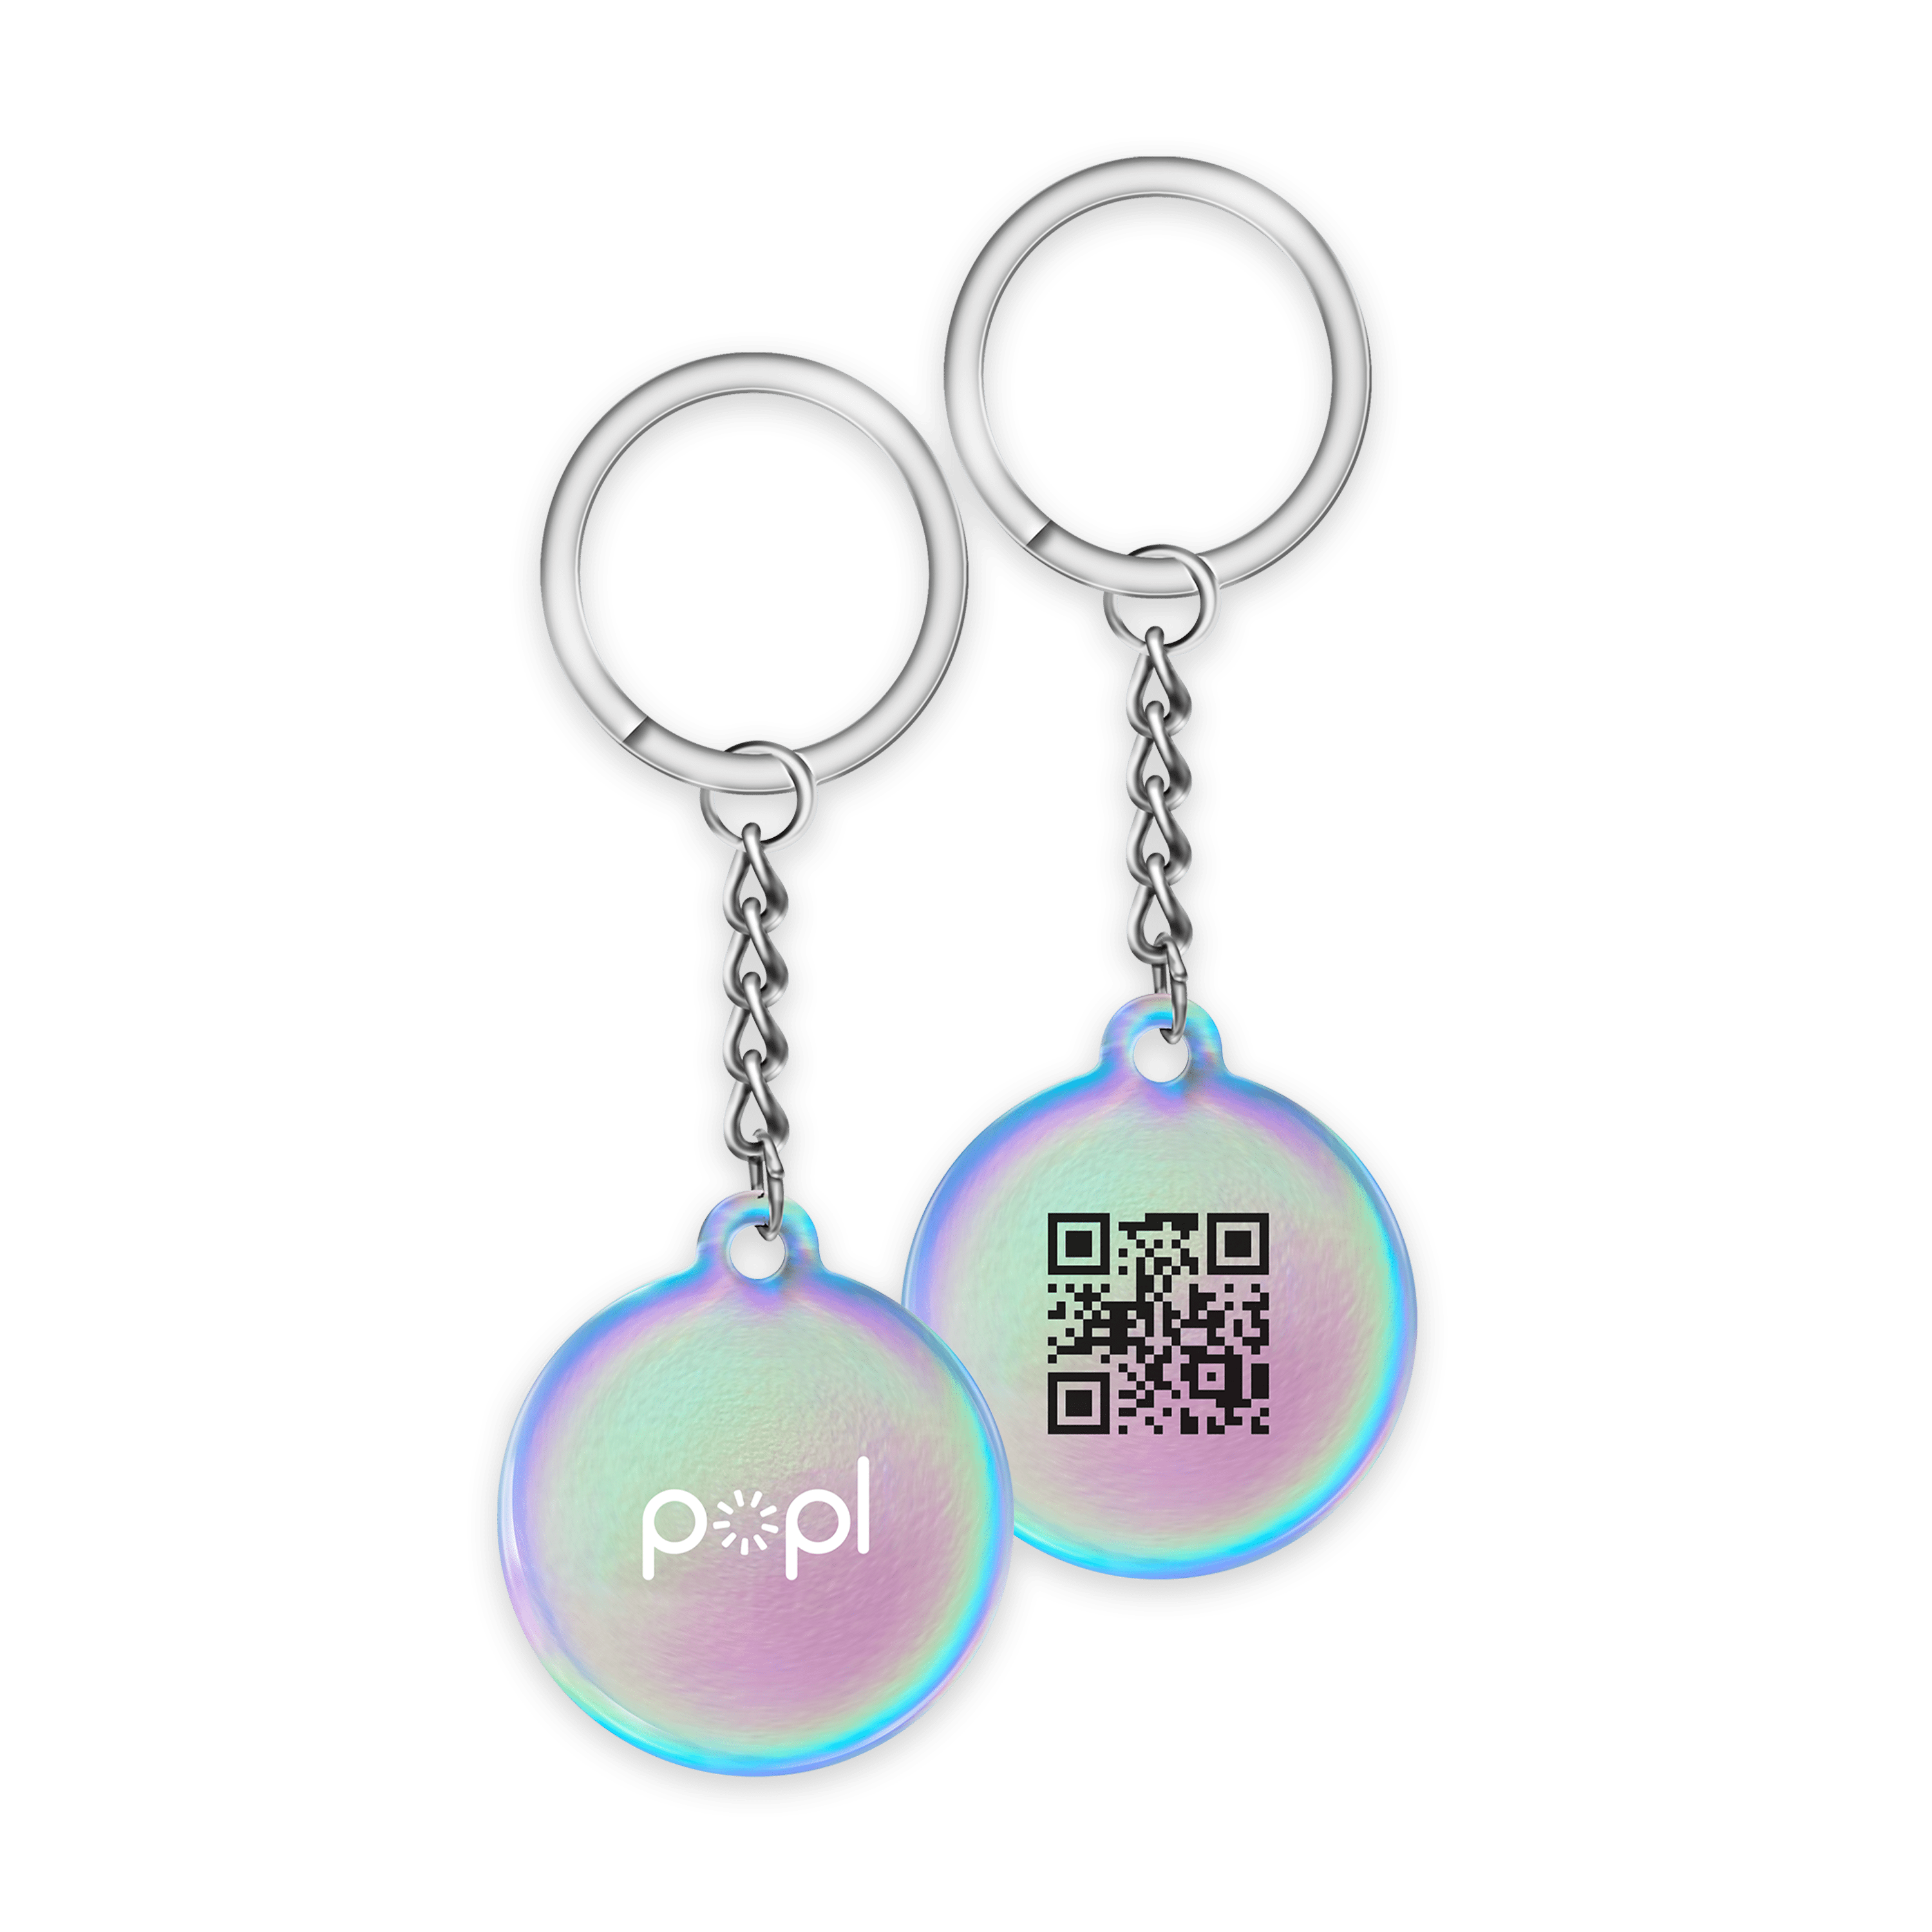 Popl Keychain - Popl